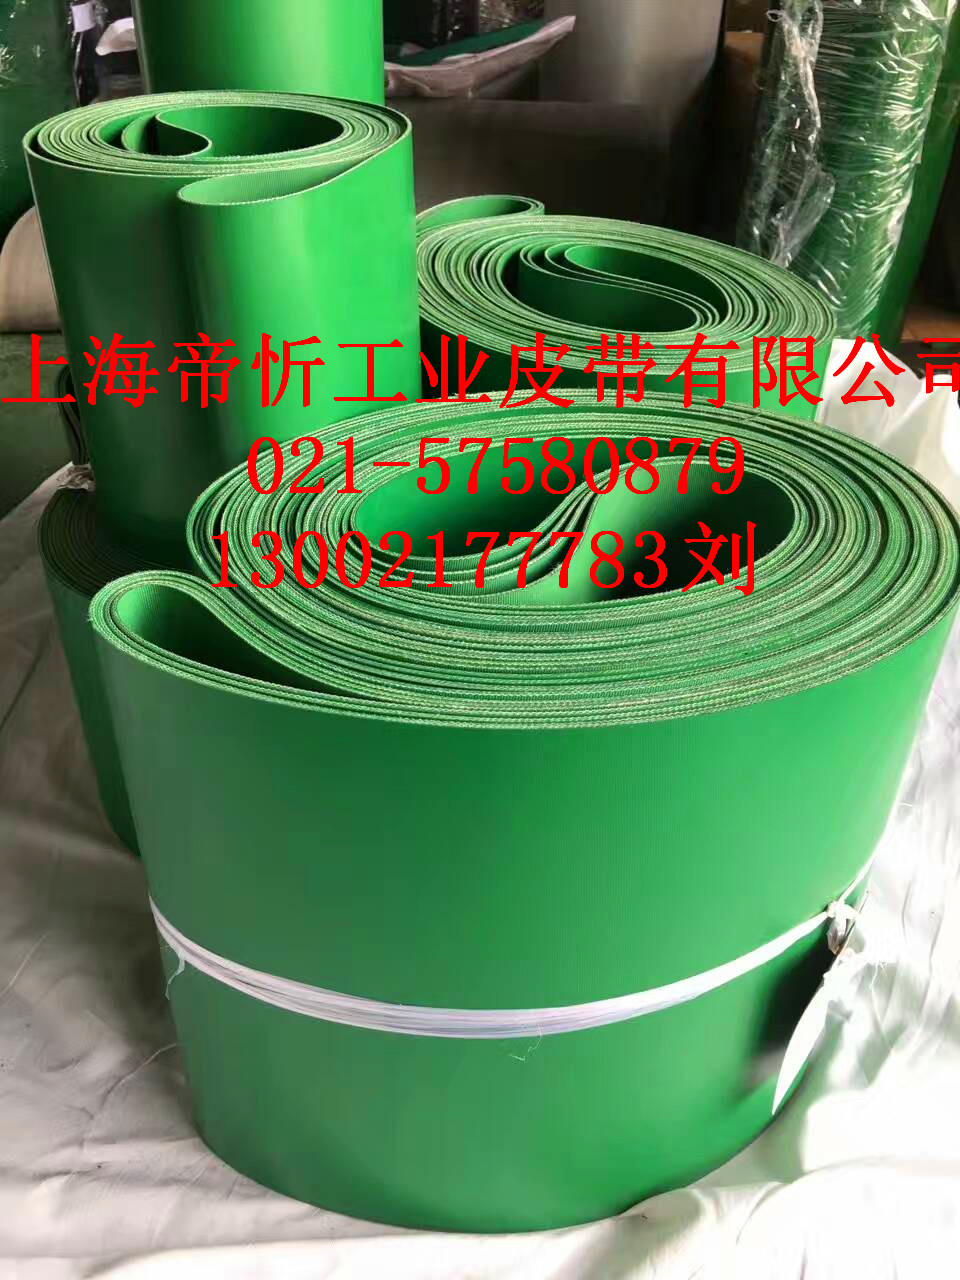 上海市PVC/PU/PE/PVK输送带厂家PVC/PU/PE/PVK输送带行业专用输送带